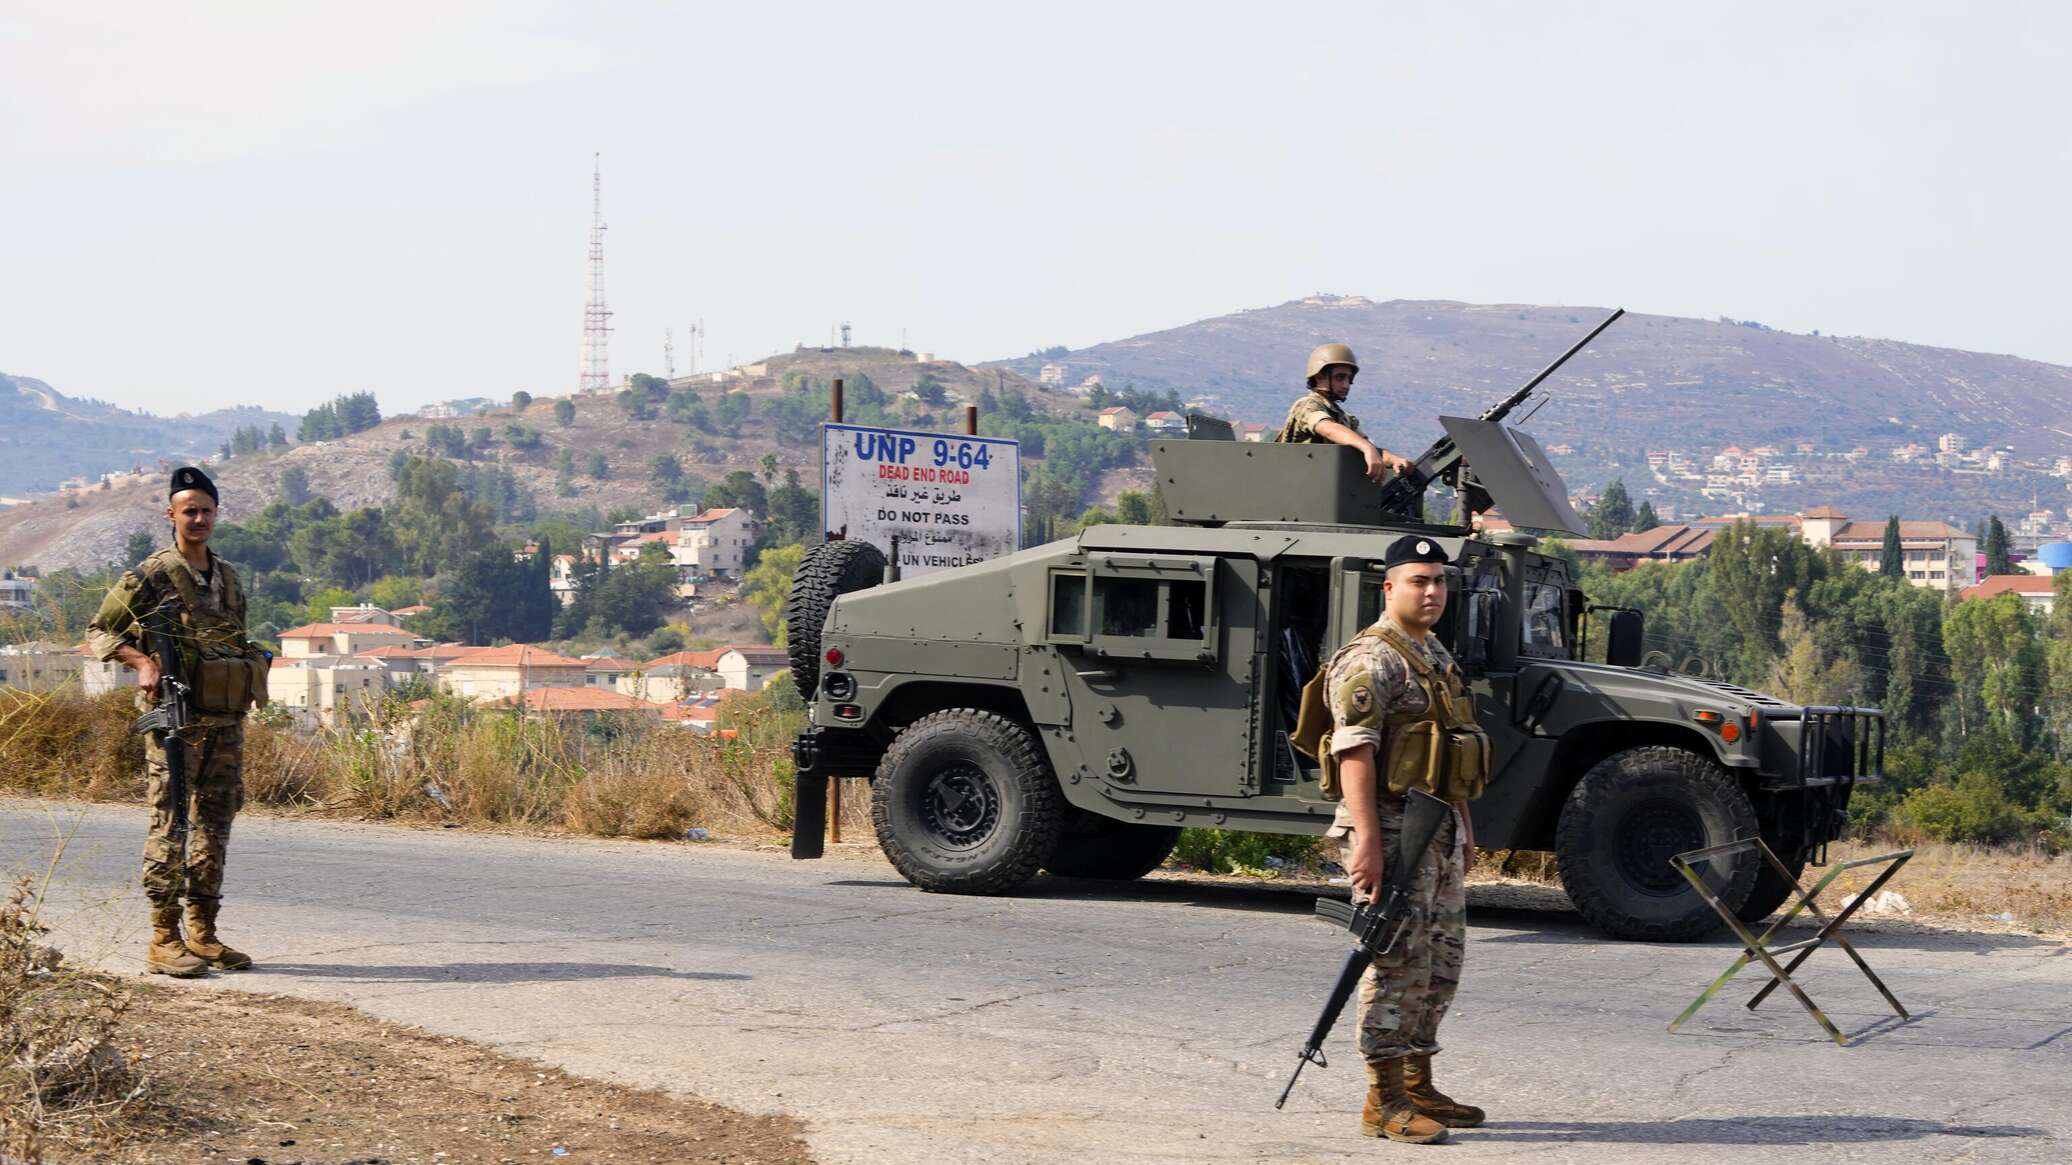 خبير عسكري: توسع الجبهات أو انتقال لبنان إلى الحرب المفتوحة احتمال وارد ولكنه ليس مرجحا